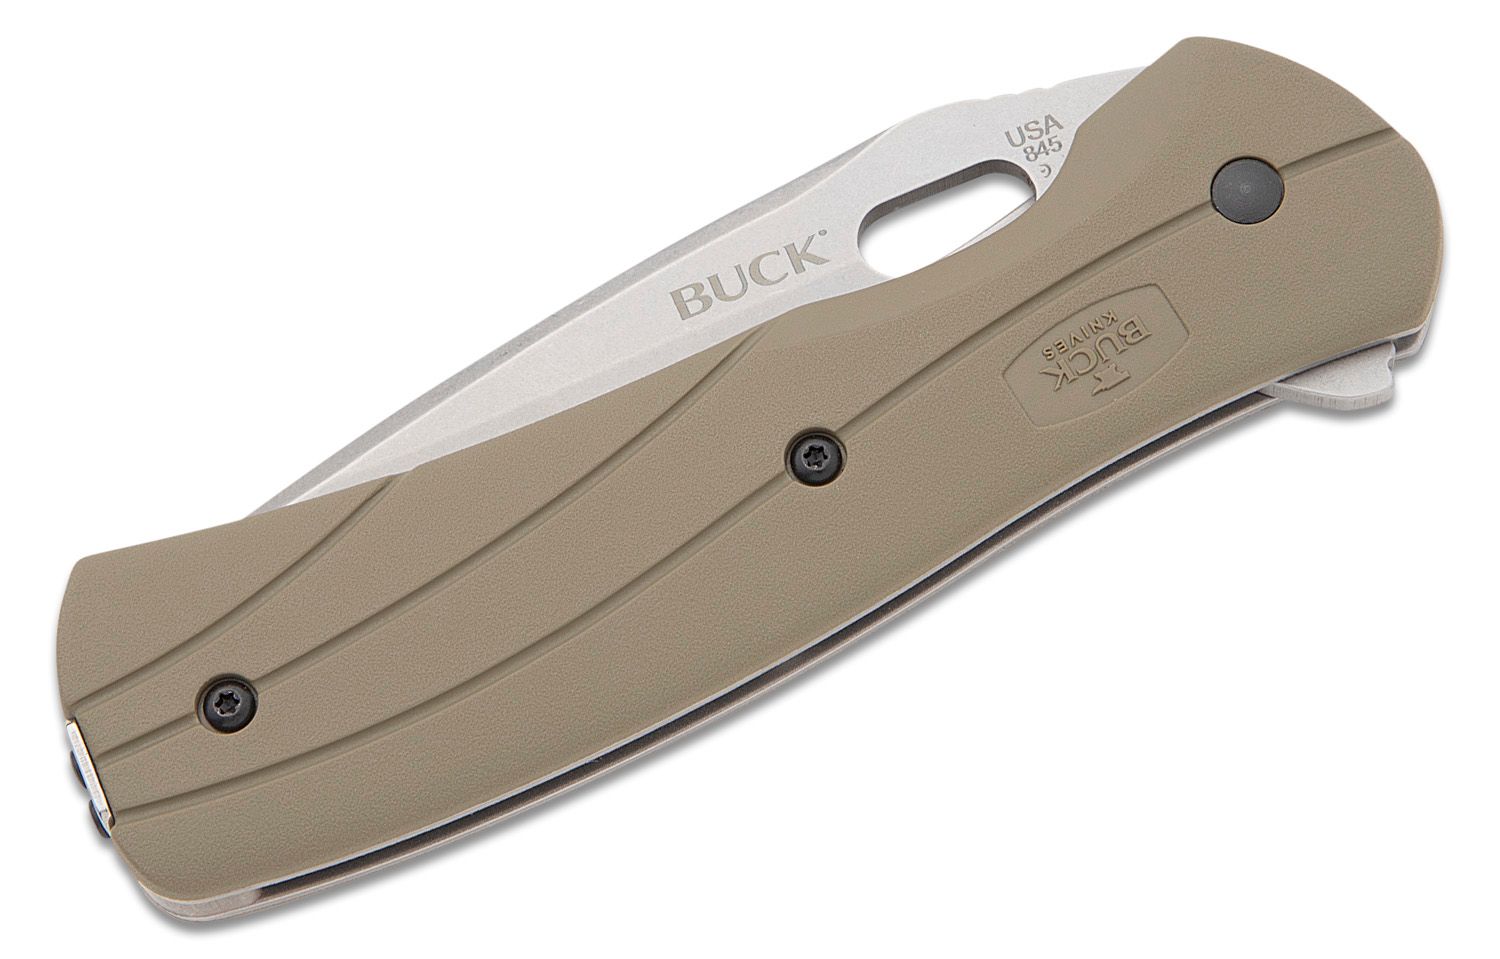 Buck 845B02-B Vantage Force Flipper Knife 3.25